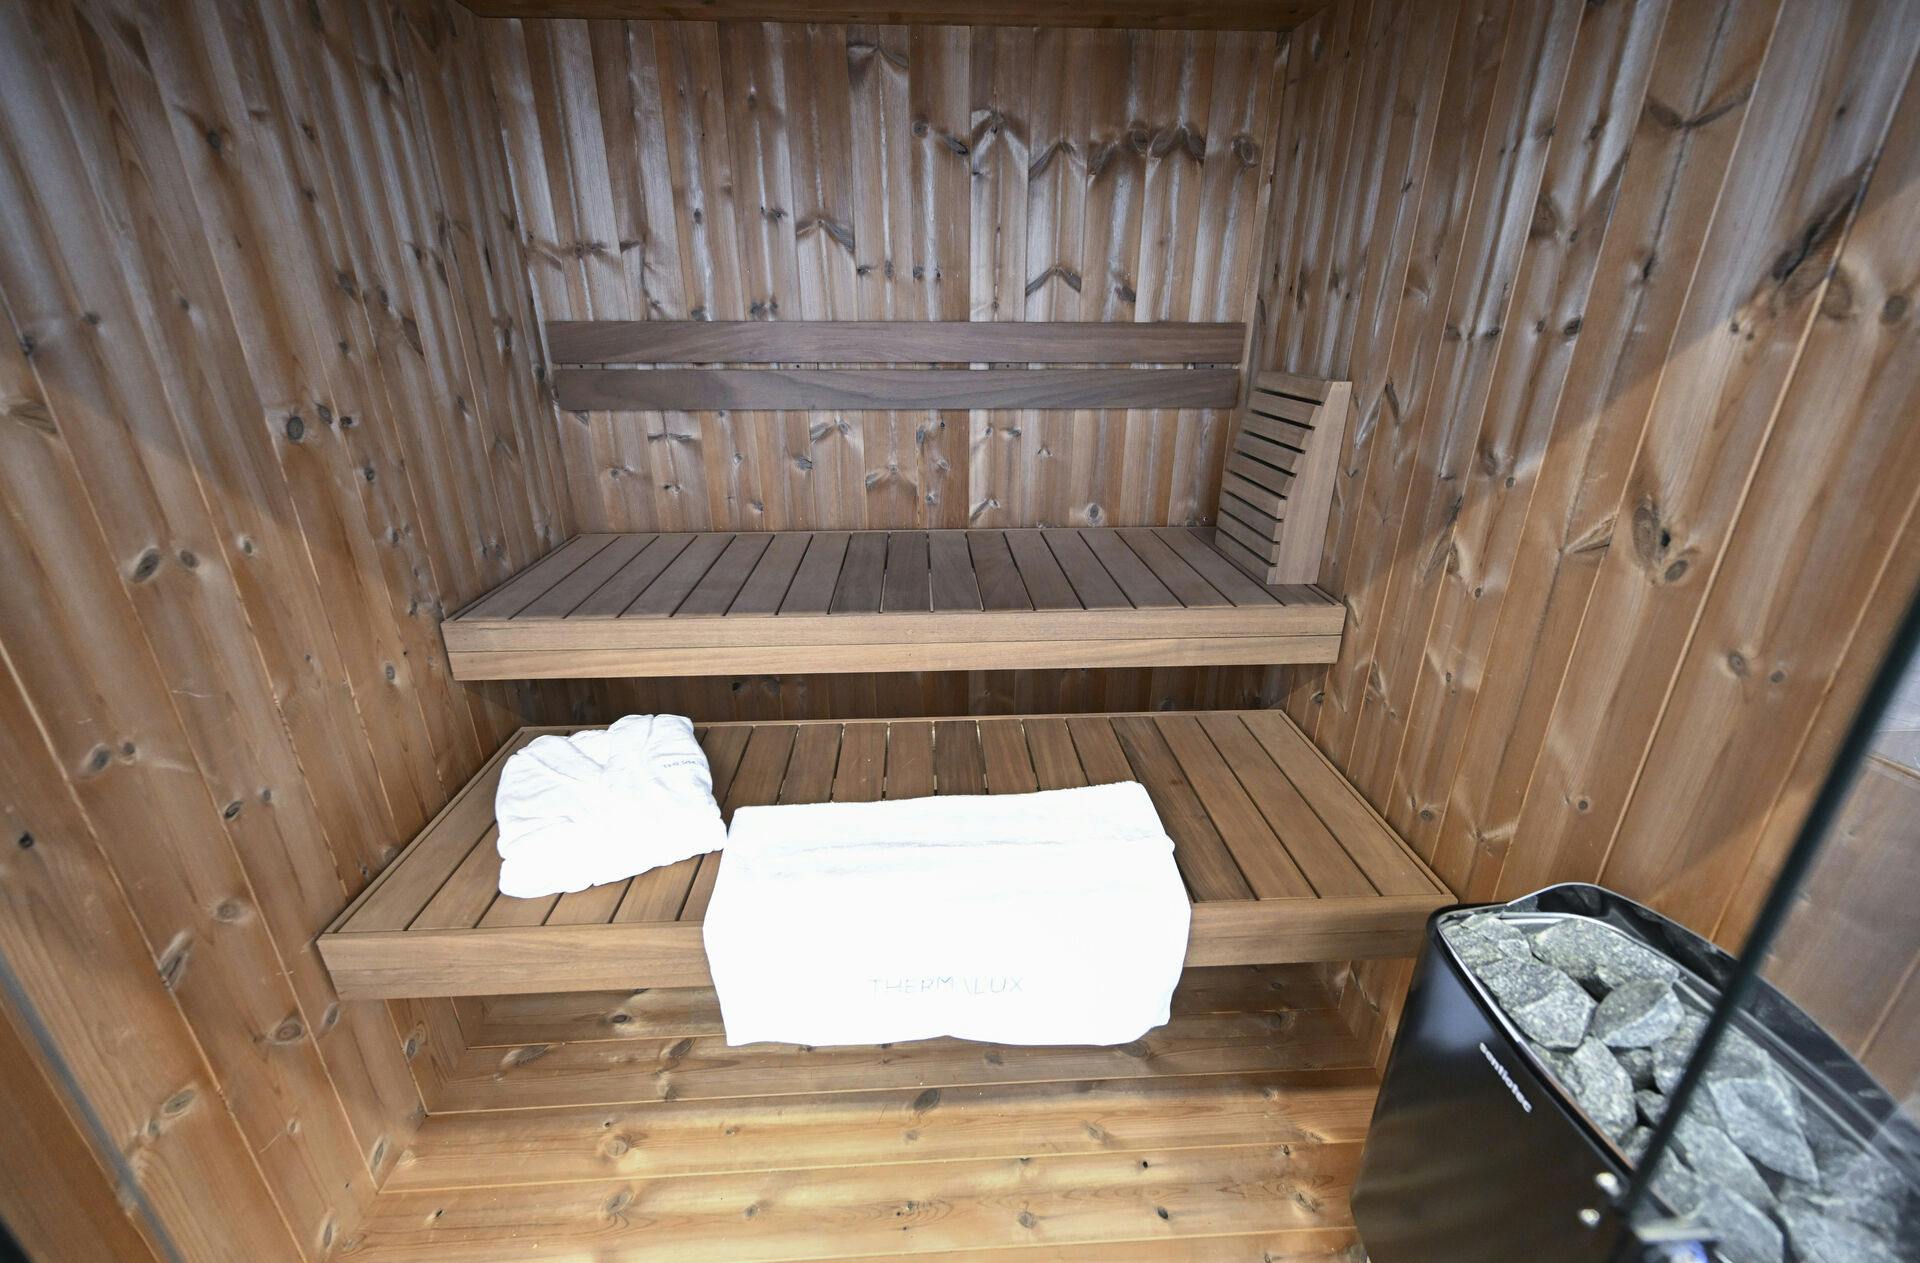 Torsdag blev et uheldigt tysk forældrepar spærret inde i en sauna - det fik politiet til at rykke ud.